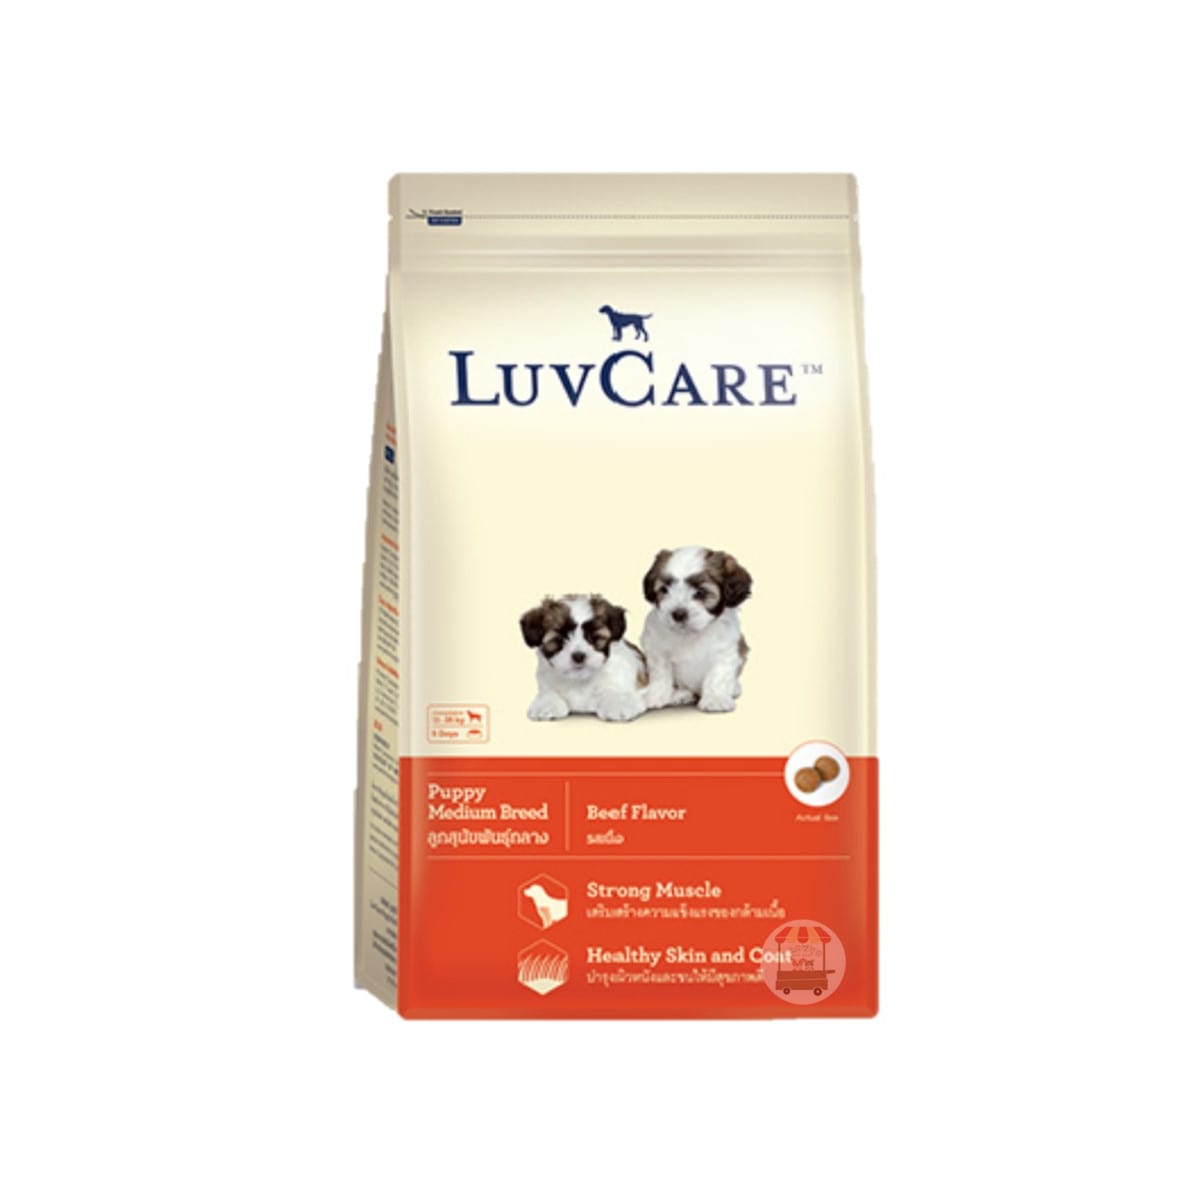 Luv Care เลิฟแคร์ อาหารสุนัข แบบเม็ด สำหรับลูกสุนัข รสเนื้อวัว 2 kg